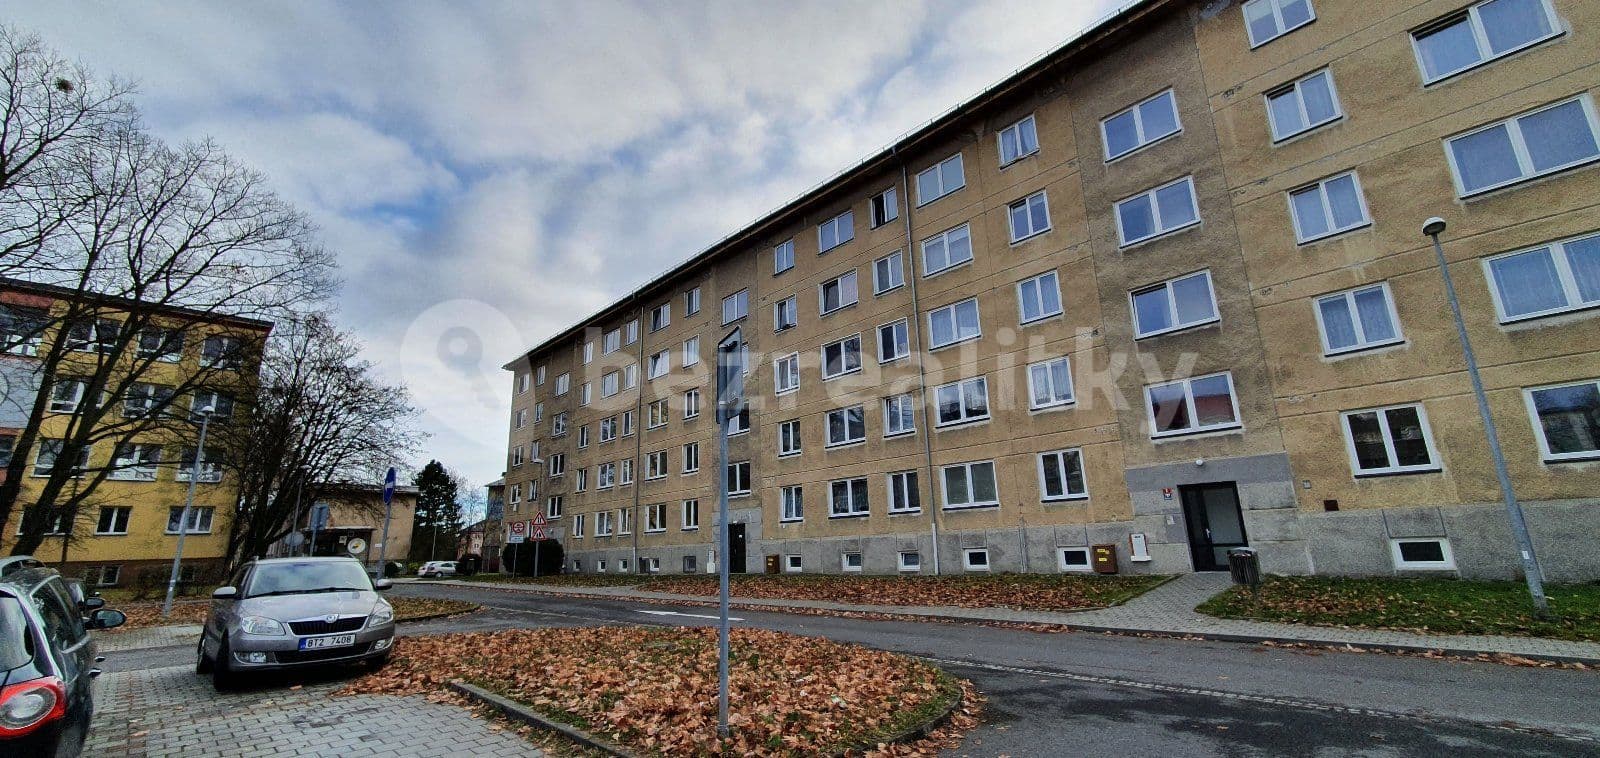 2 bedroom flat to rent, 51 m², Karla Čapka, Havířov, Moravskoslezský Region